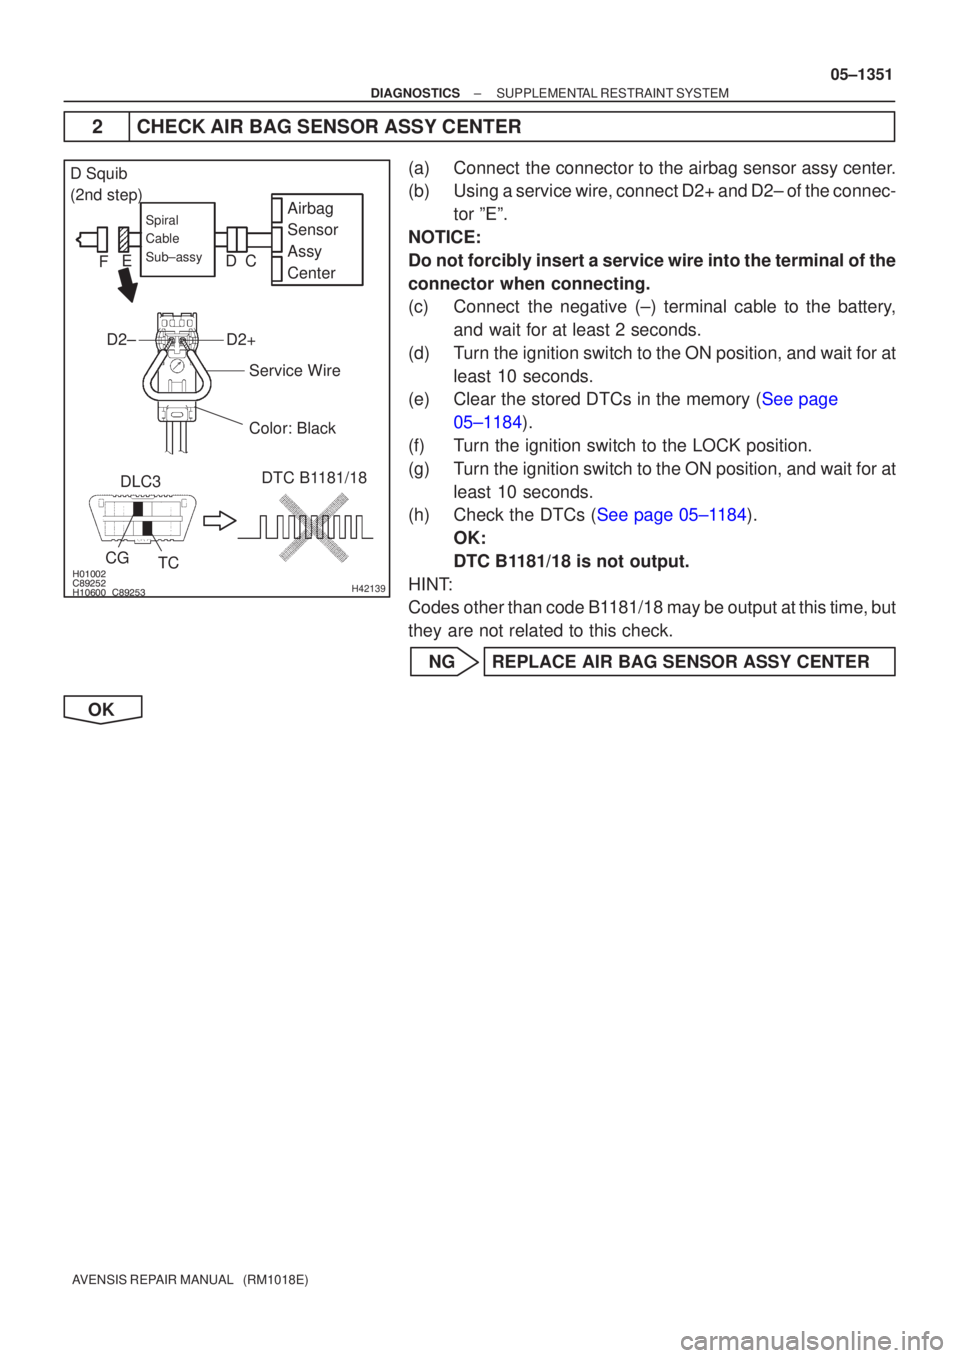 TOYOTA AVENSIS 2005  Service Repair Manual 


	\b	\bH42139
Airbag
Sensor
Assy
CenterSpiral
Cable
Sub±assy
Color: Black
DLC3
CG TC DTC B1181/18
Service Wire
D2+D2±
D Squib
(2nd step)
C
D
E
F
±
DIAGNOSTICS SUPPLEMENTAL RESTR